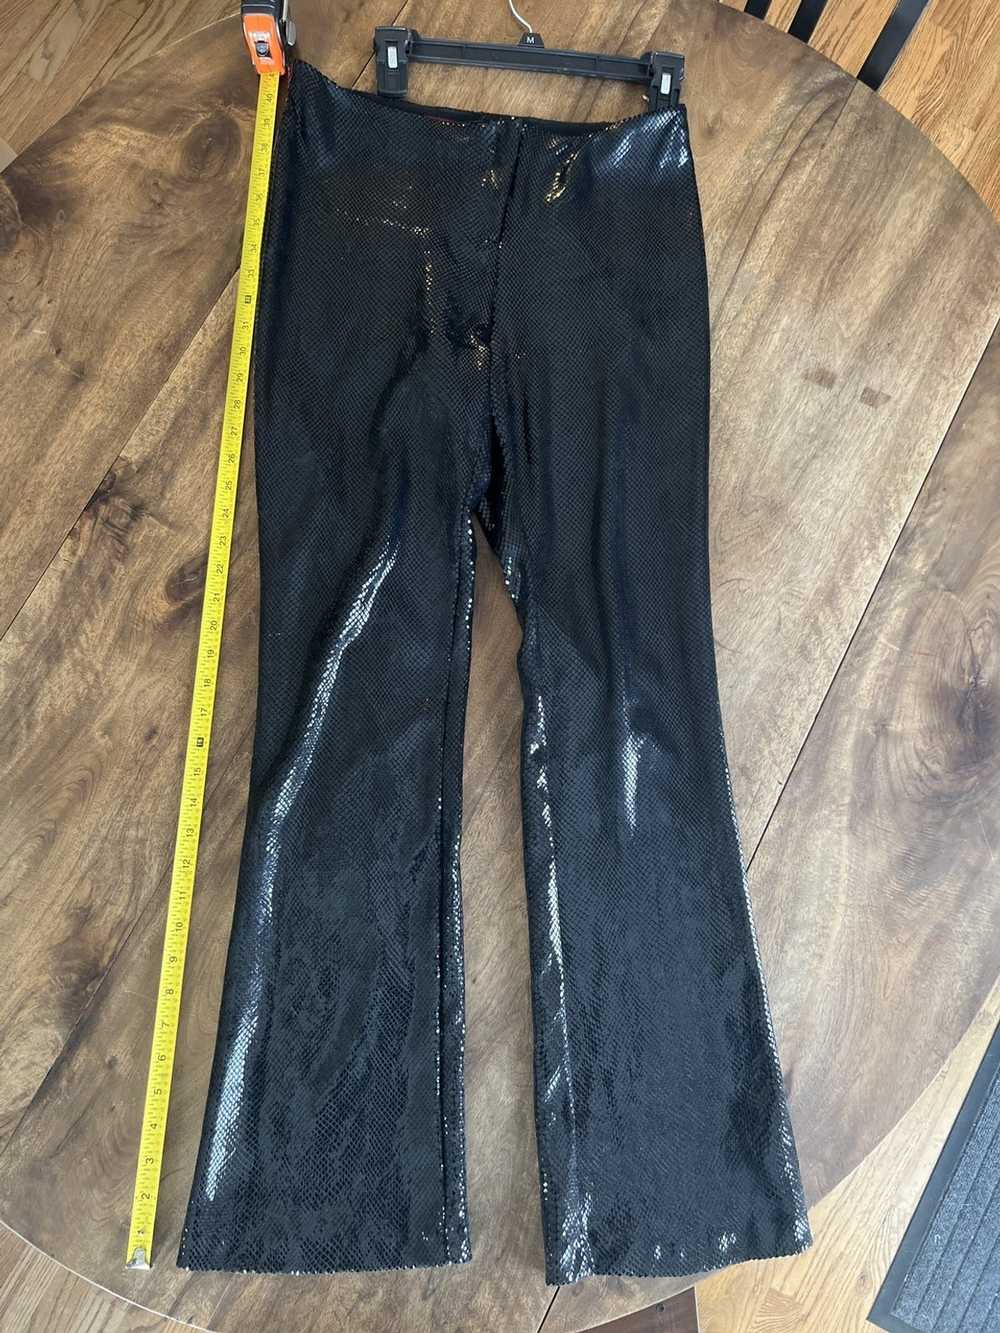 Vintage Black 80s Snakeskin Flare Pants - image 1